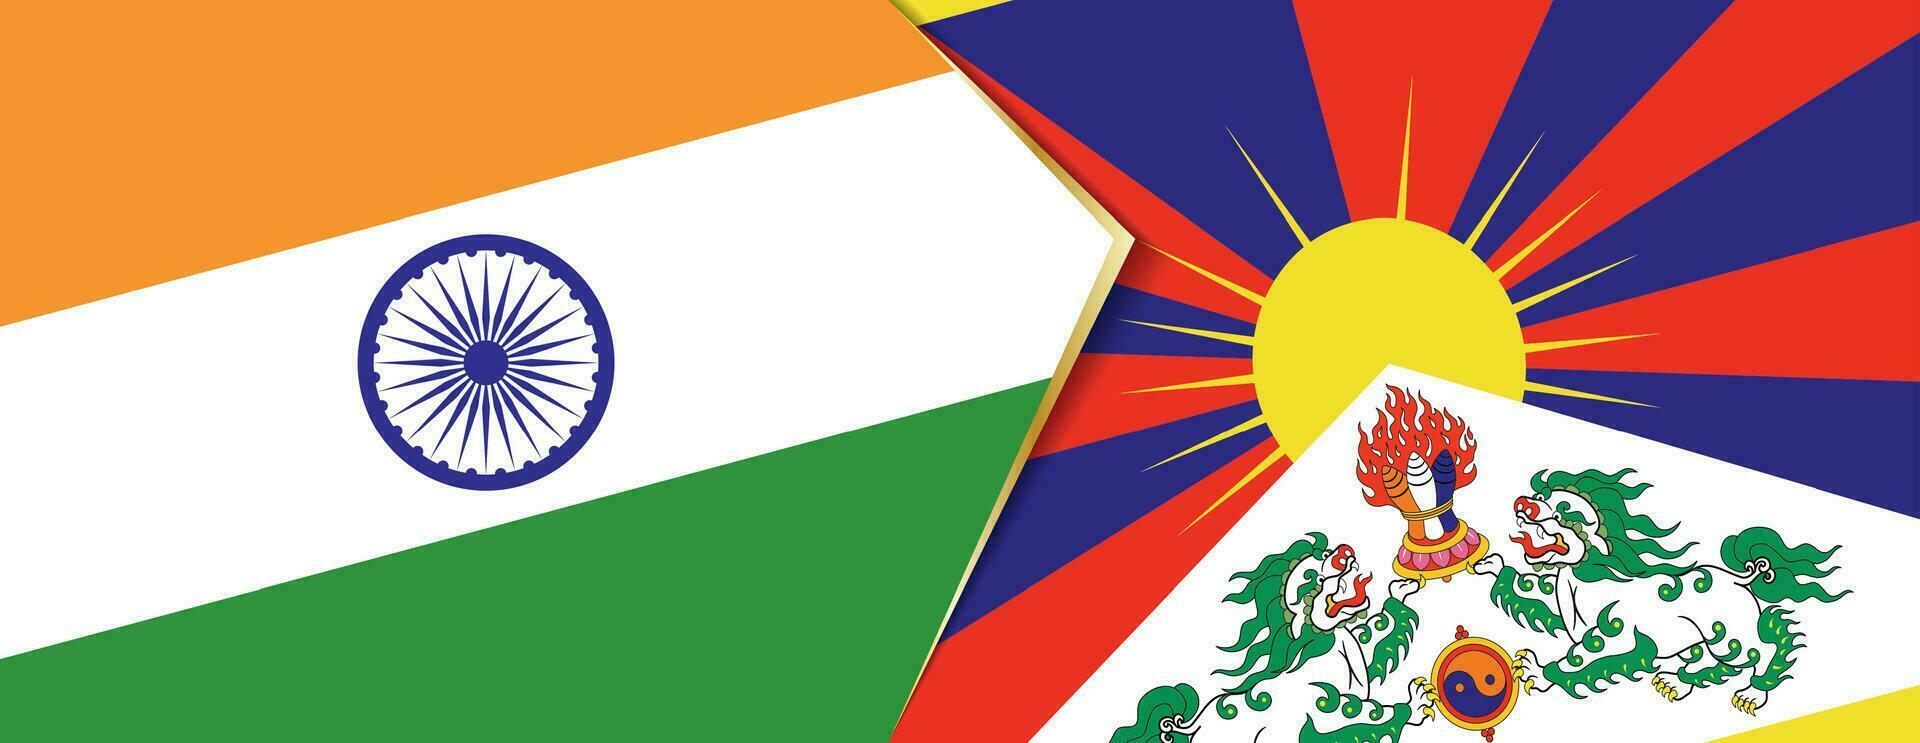 India e Tibet bandiere, Due vettore bandiere.